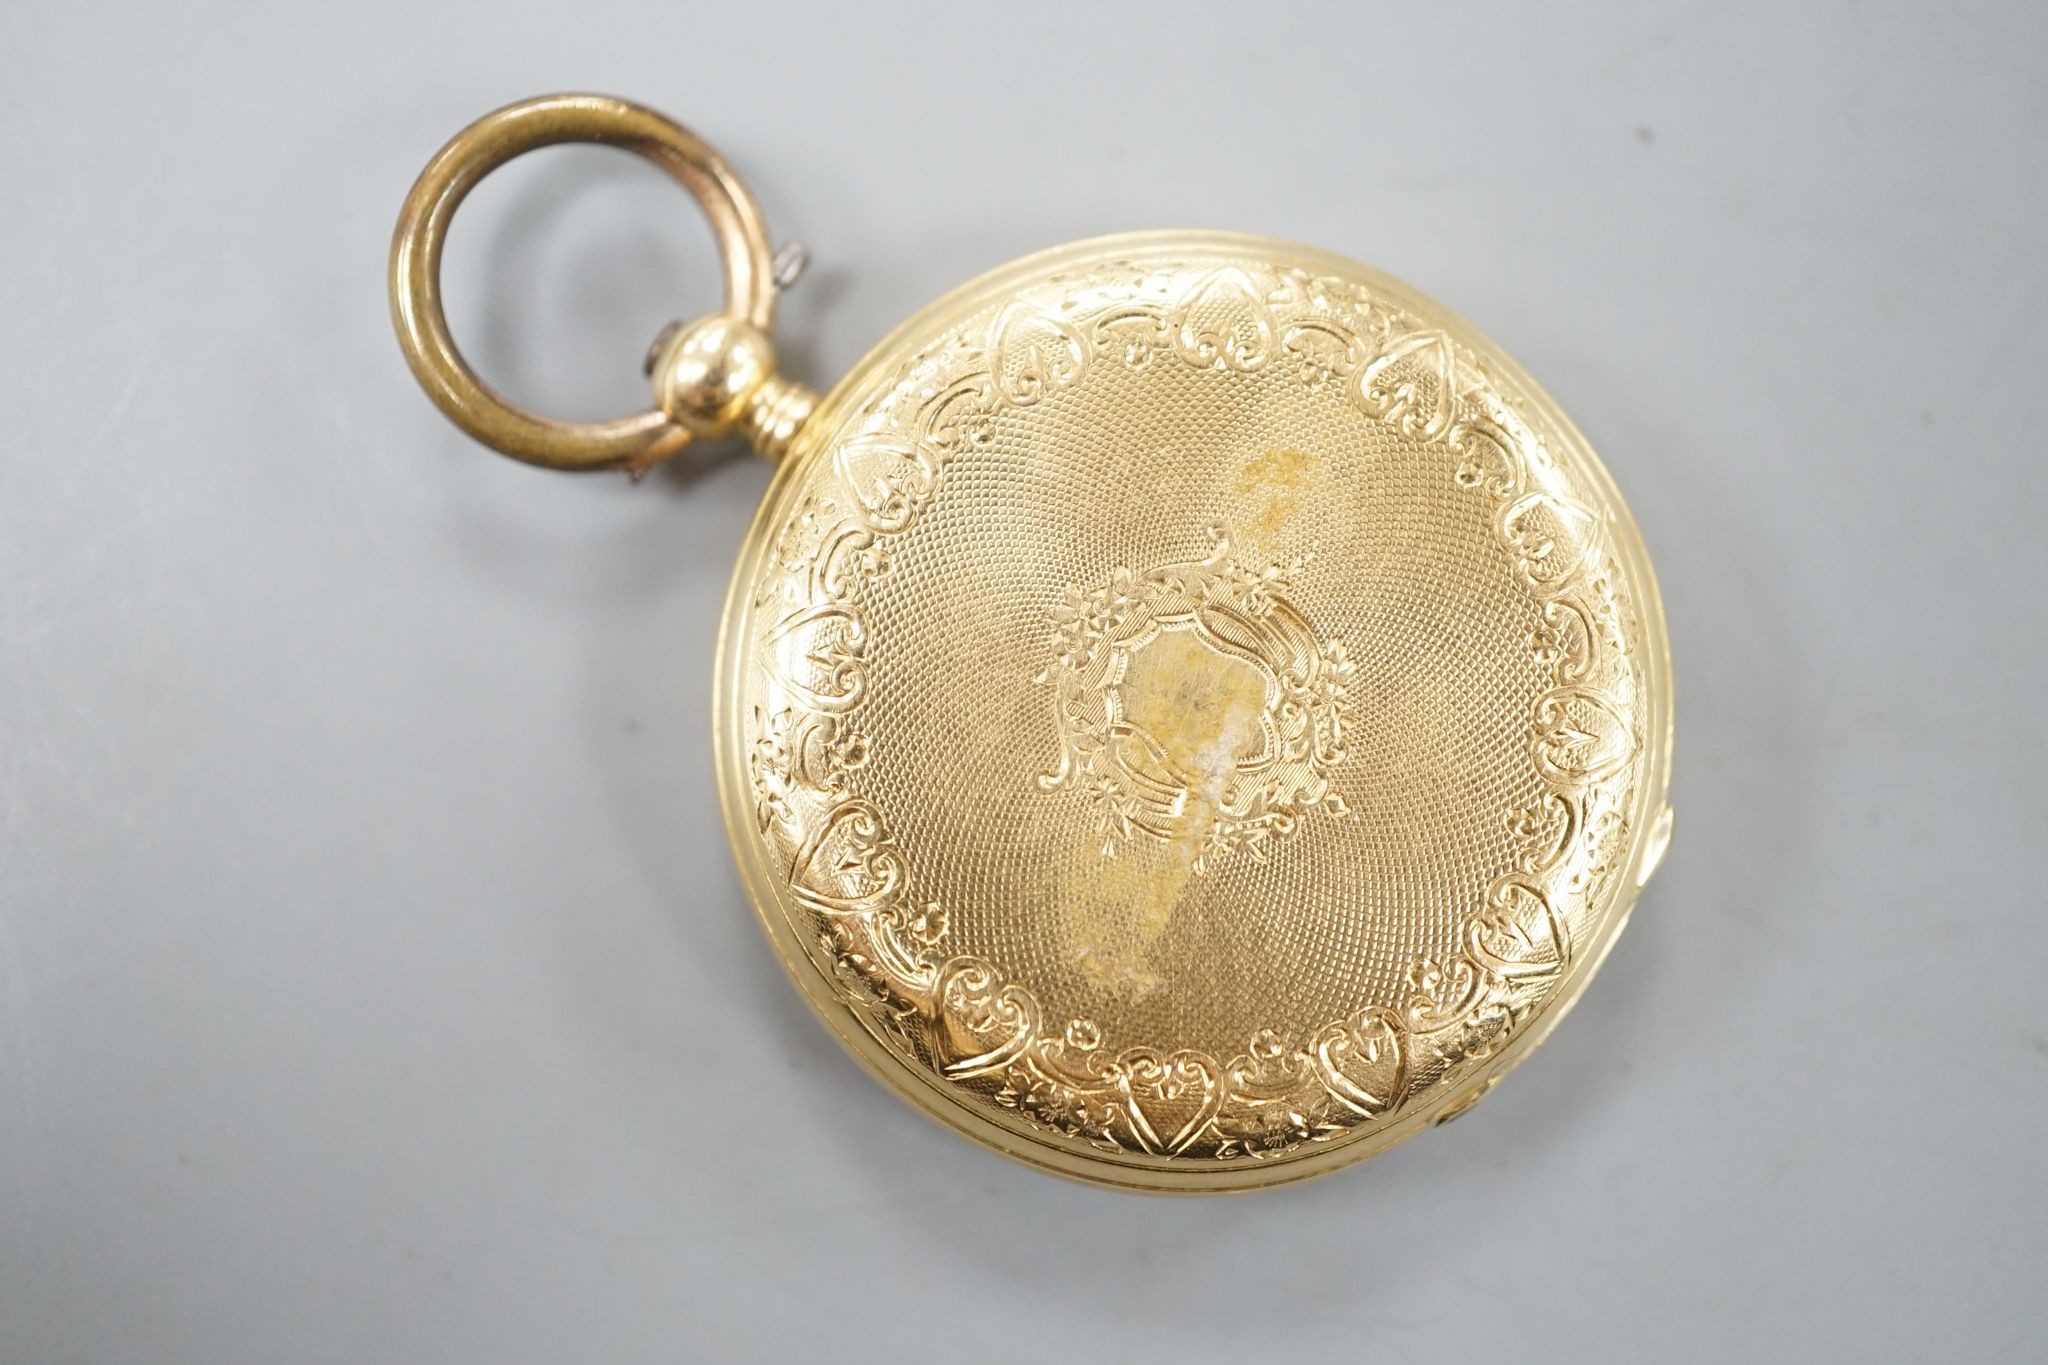 An 18k open faced keywind fob watch, with Roman dial, case diameter 33mm, gross 29.4 grams.